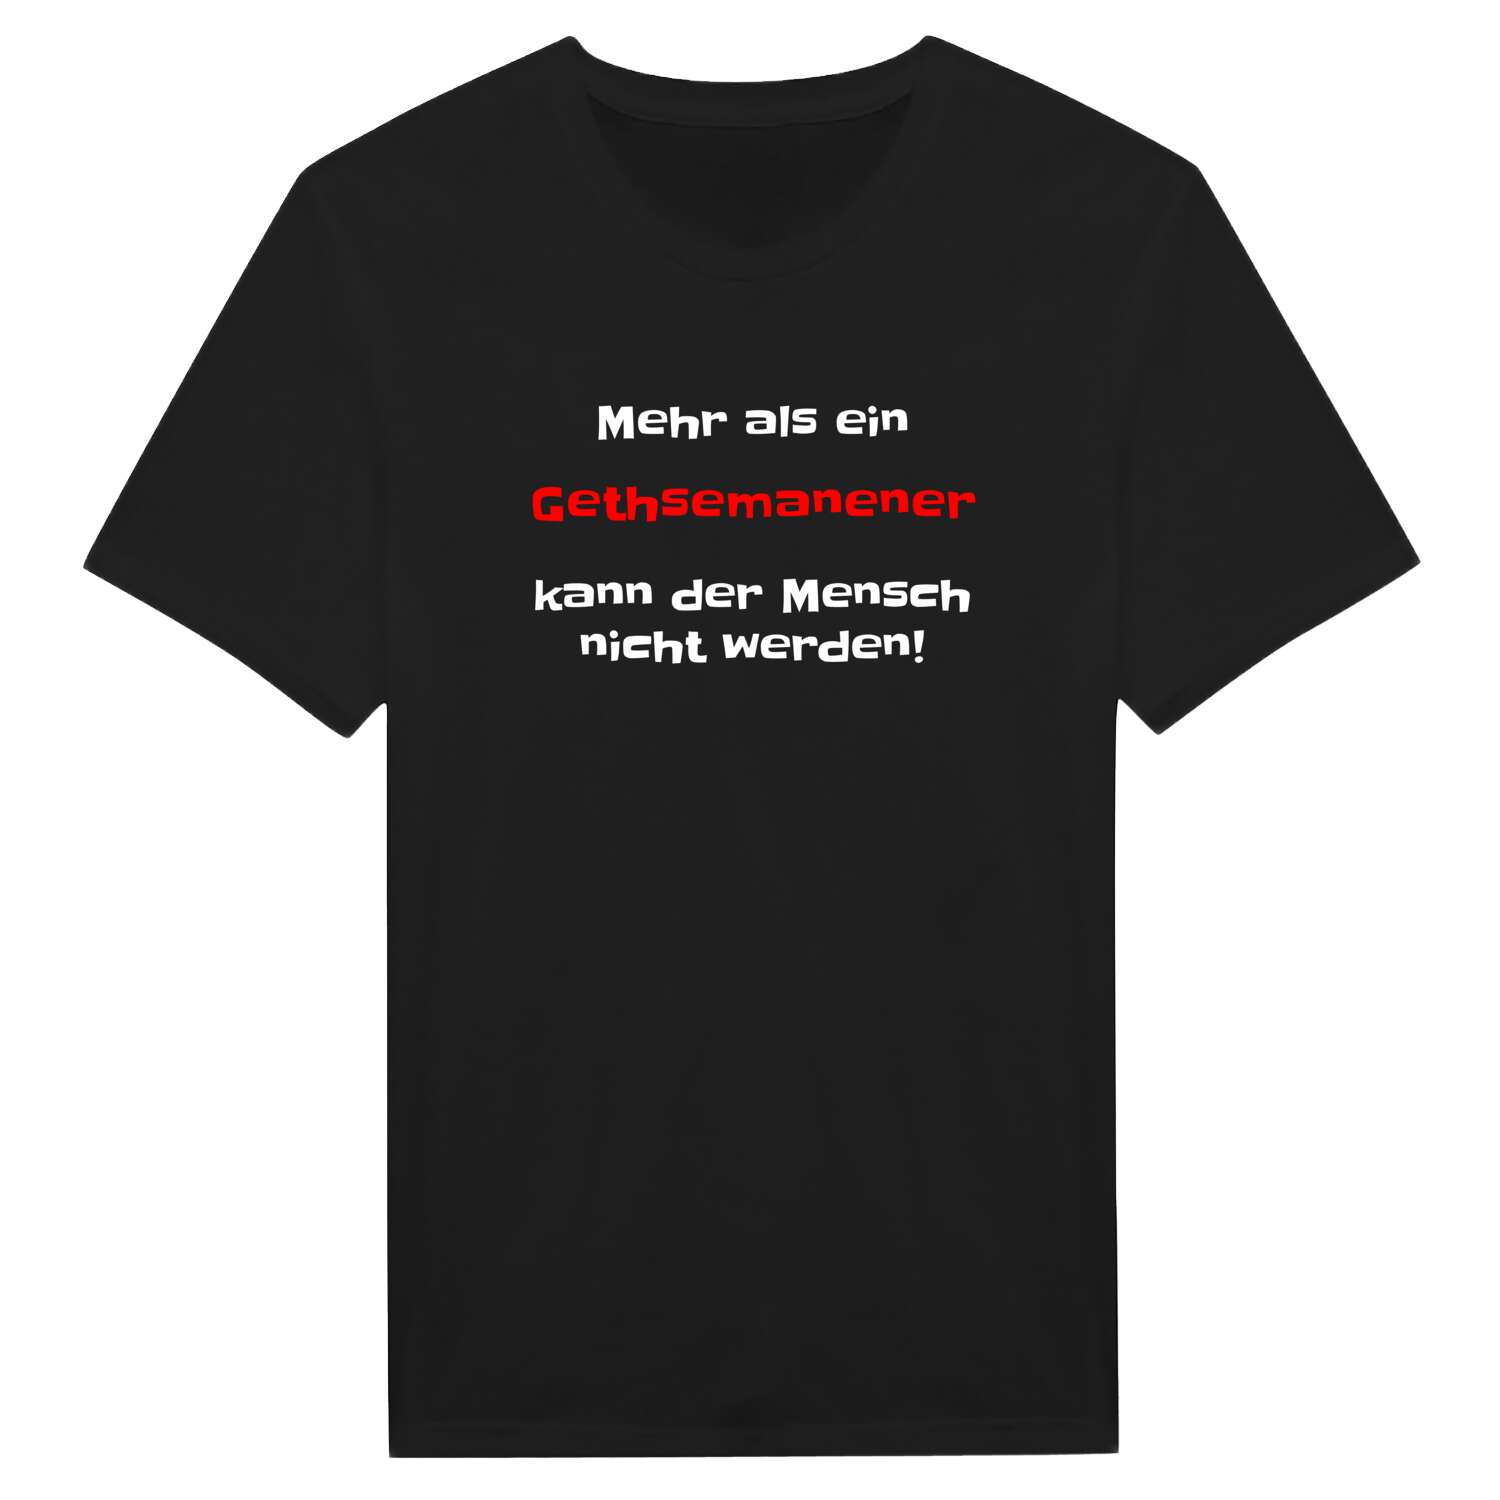 Gethsemane T-Shirt »Mehr als ein«